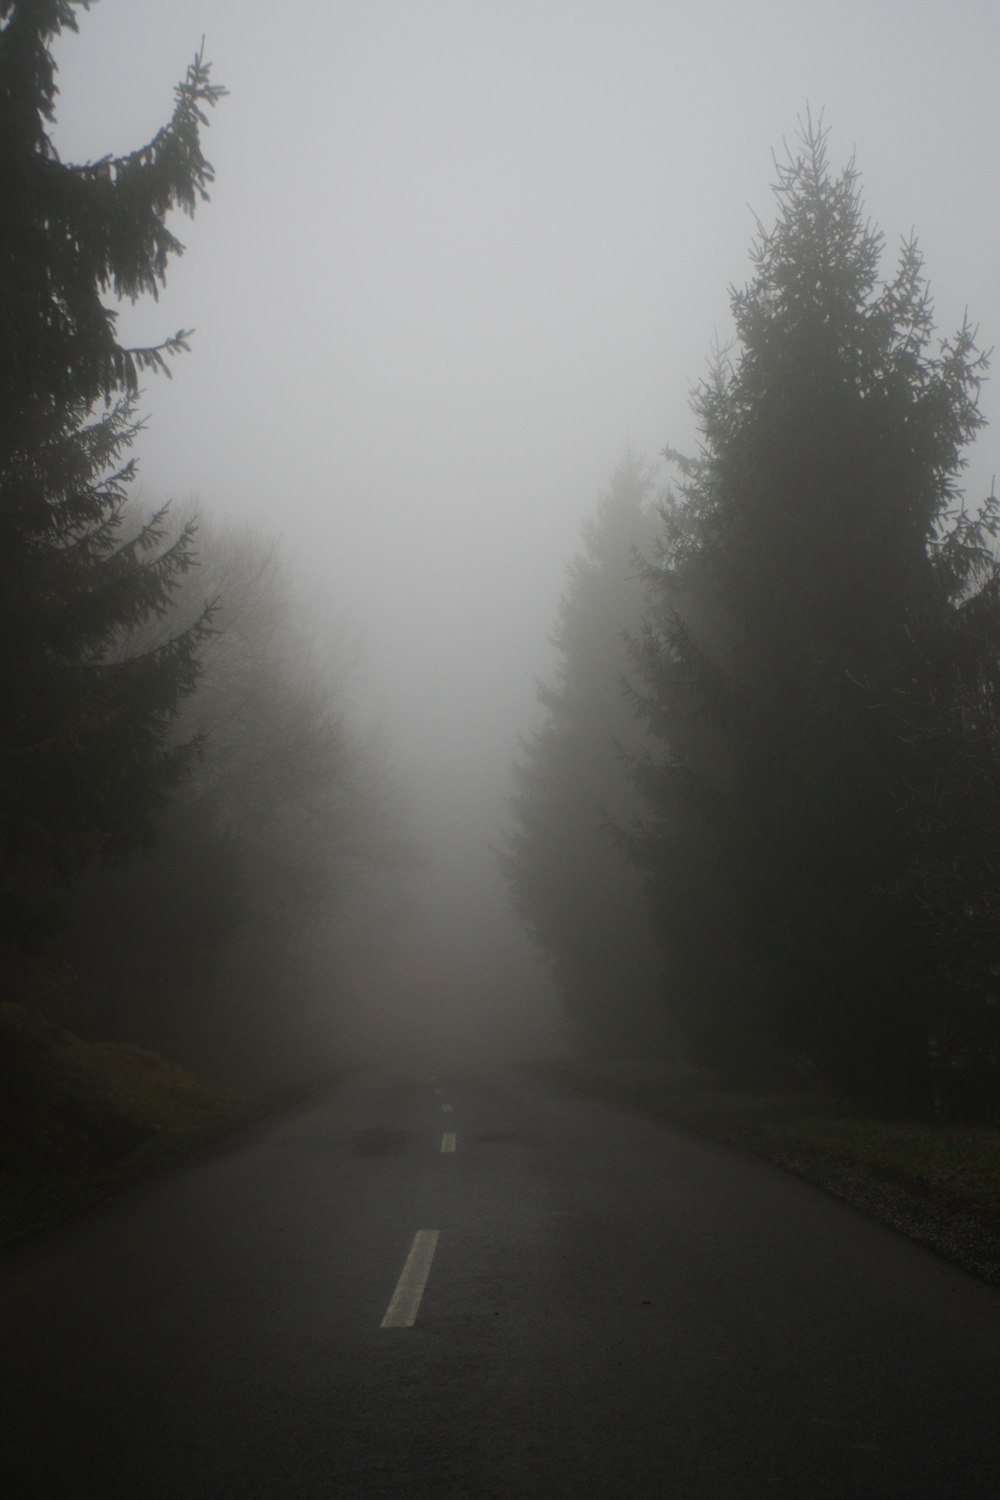 Carretera de asfalto gris entre árboles verdes durante un día de niebla